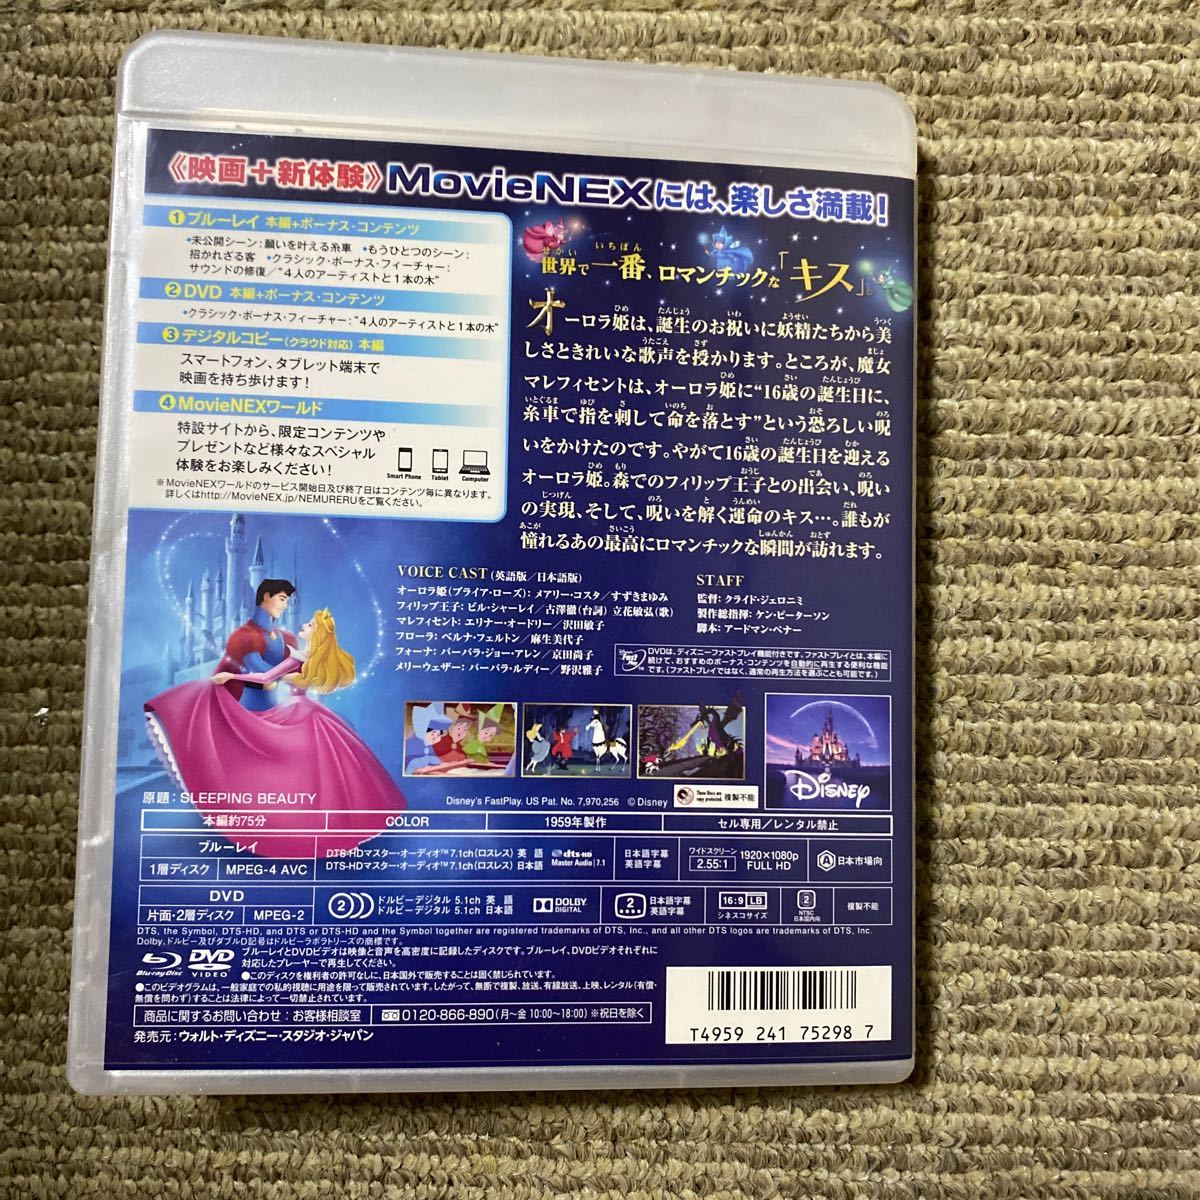 眠れる森の美女 ダイヤモンドコレクション MovieNEX ブルーレイ+DVDセット ディズニー